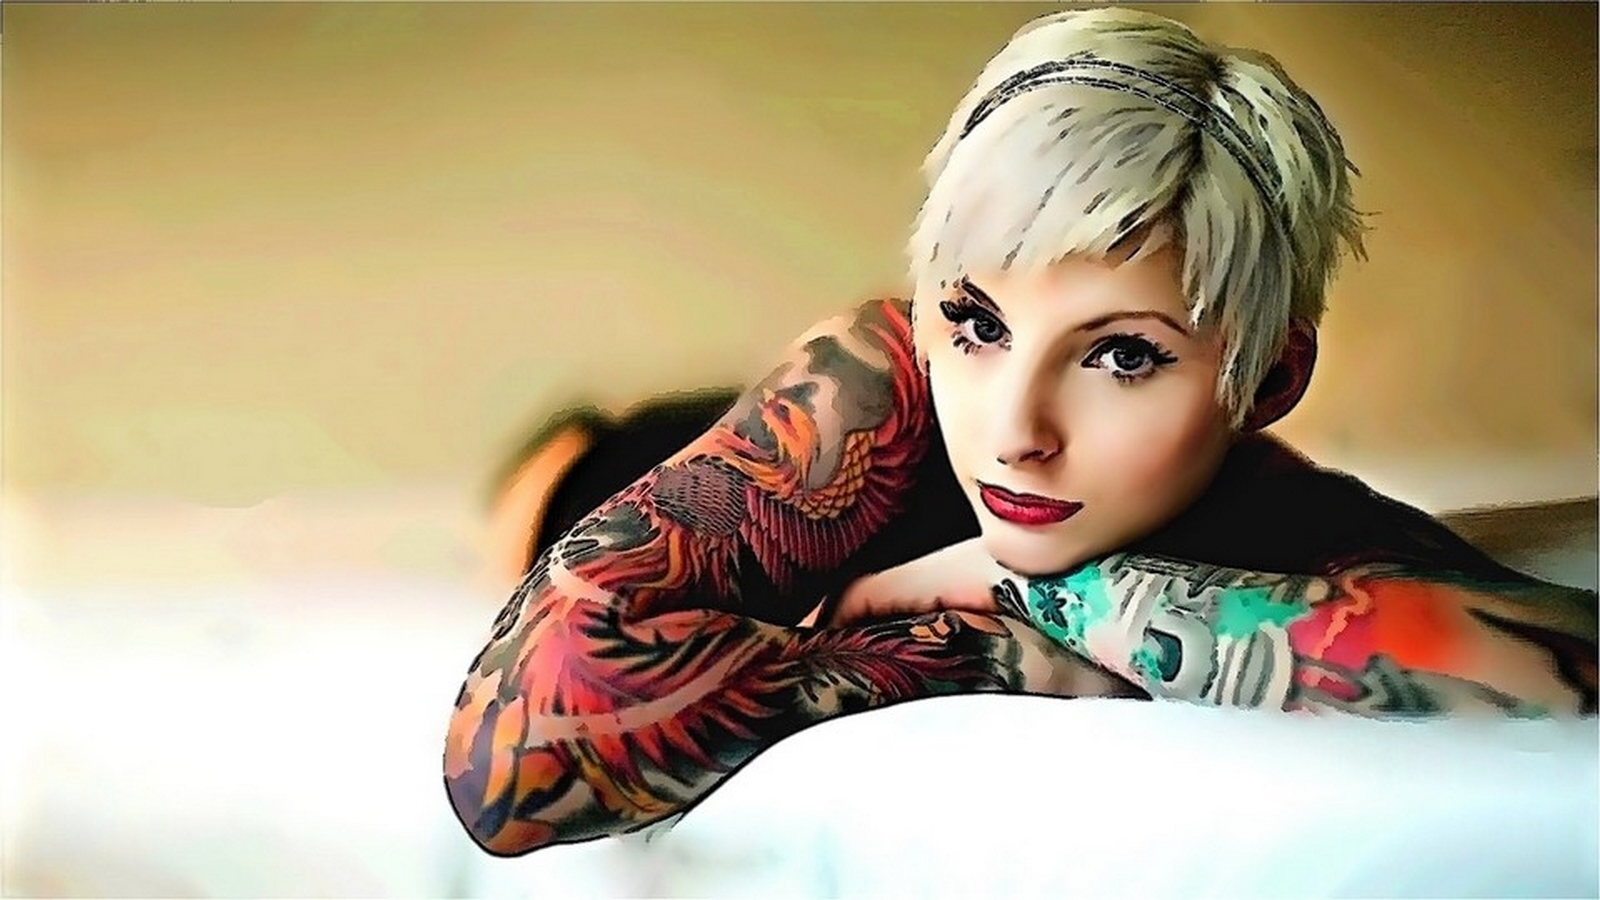 Tattooed Women Wallpaper